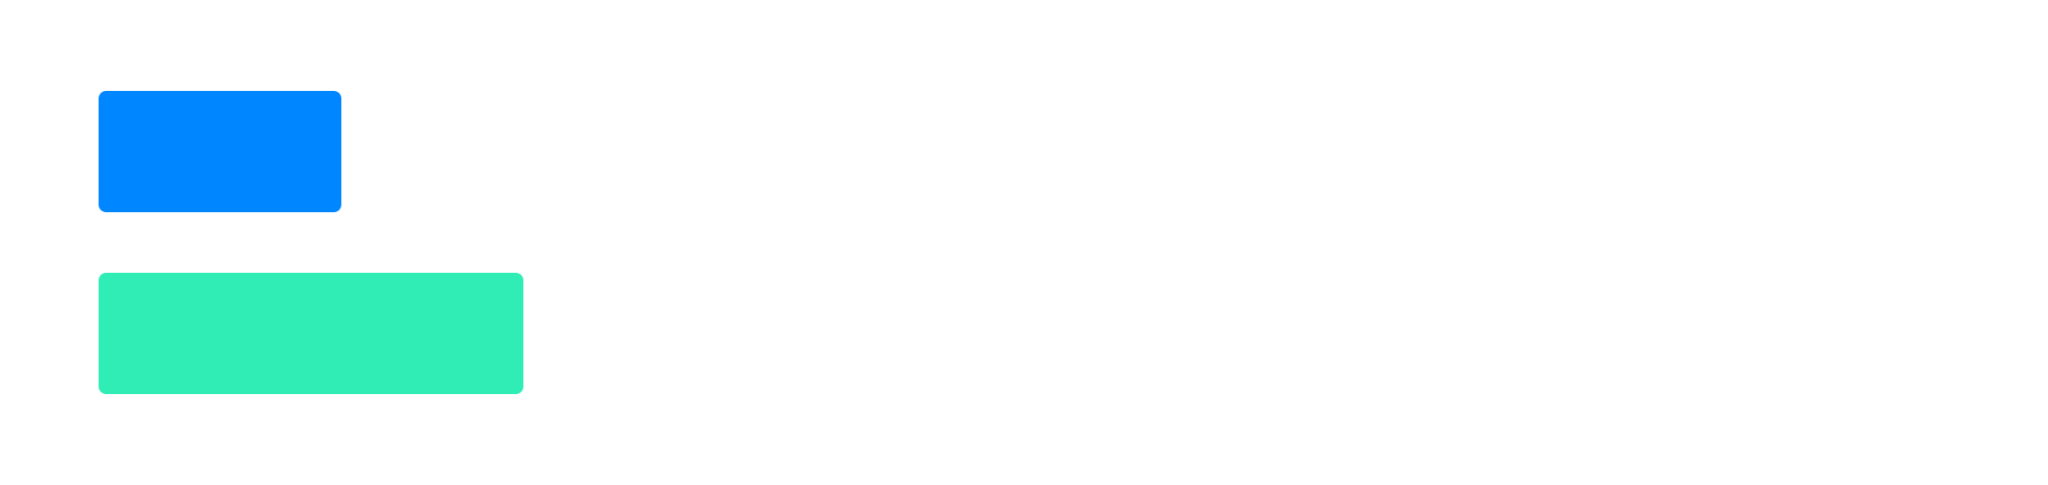 white logo monochrome